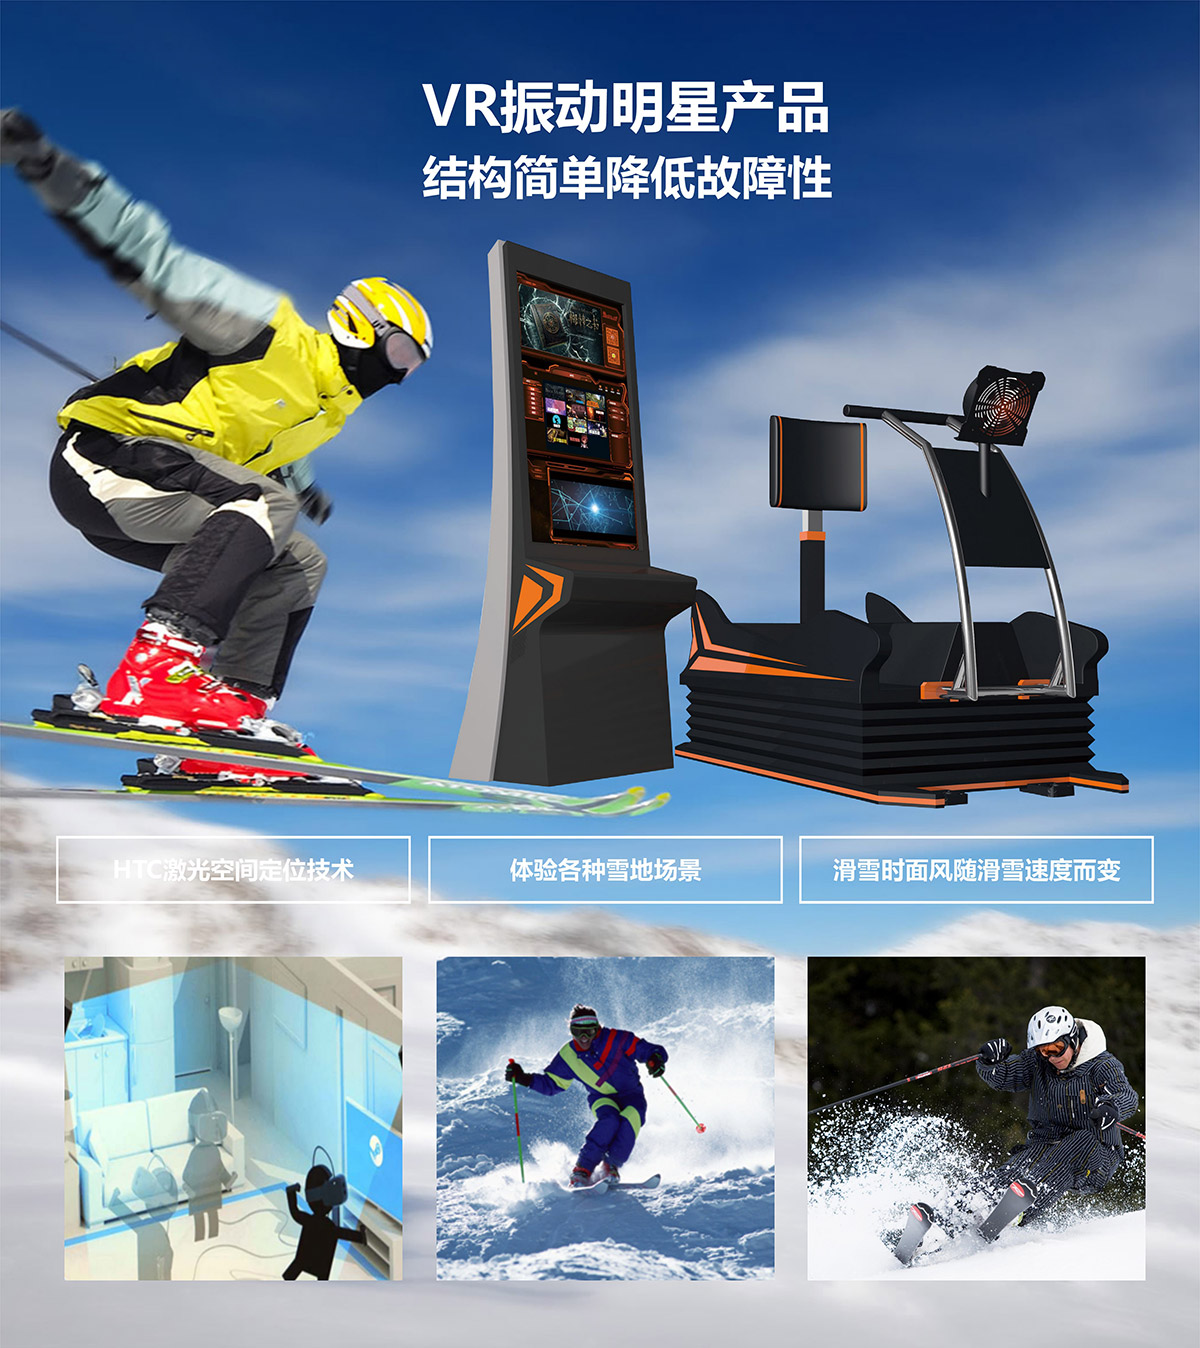 教育体验VR明星产品模拟滑雪.jpg